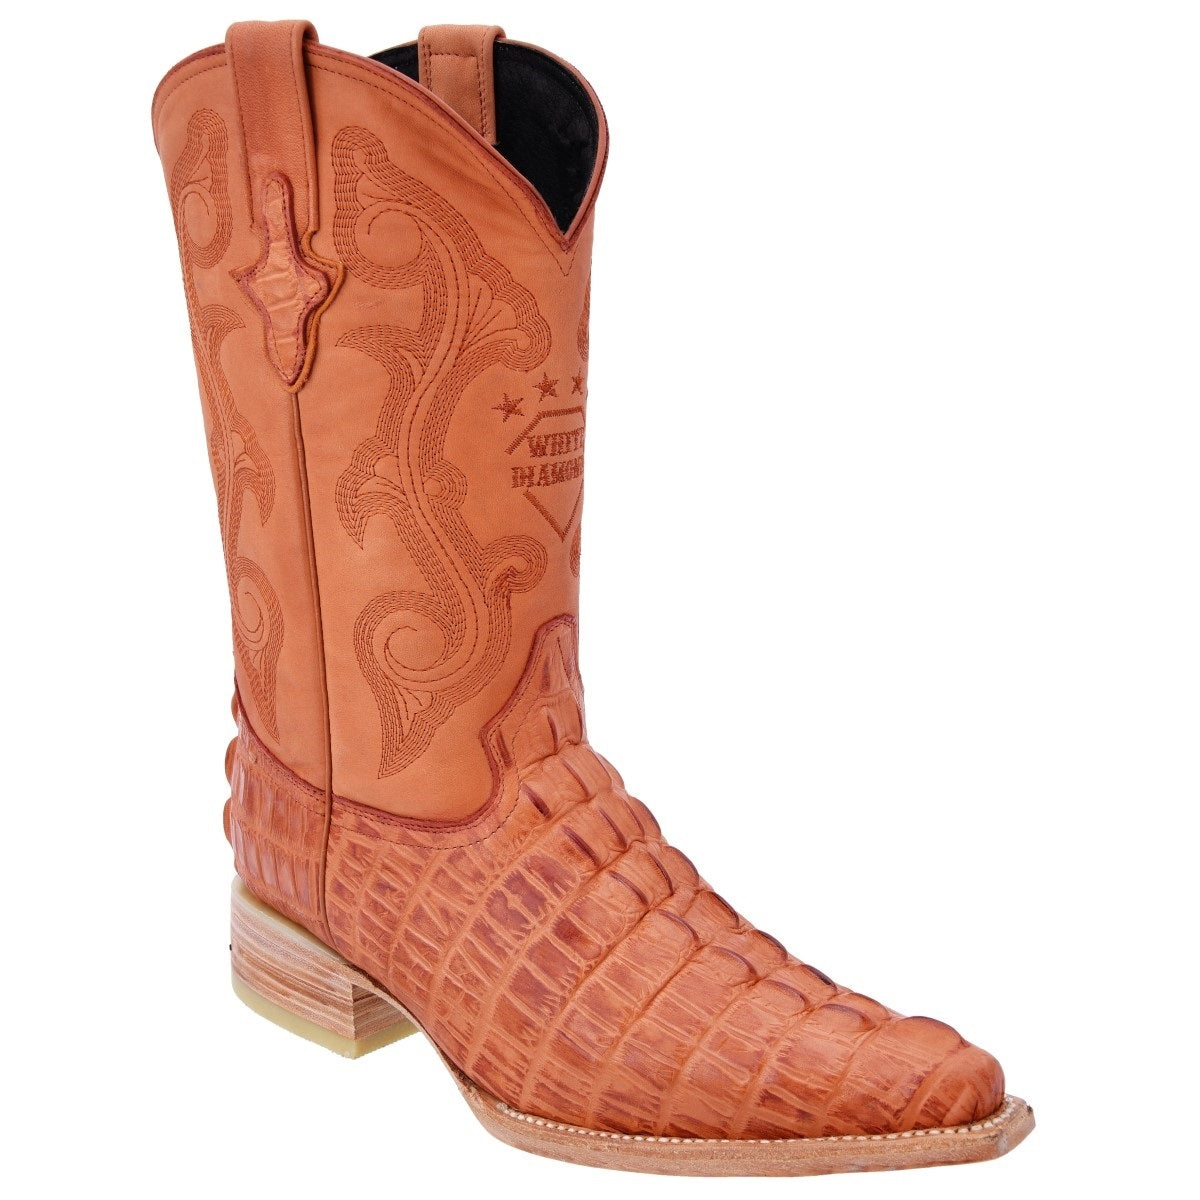 Botas Vaqueras TM-WD0154 - Western Boots